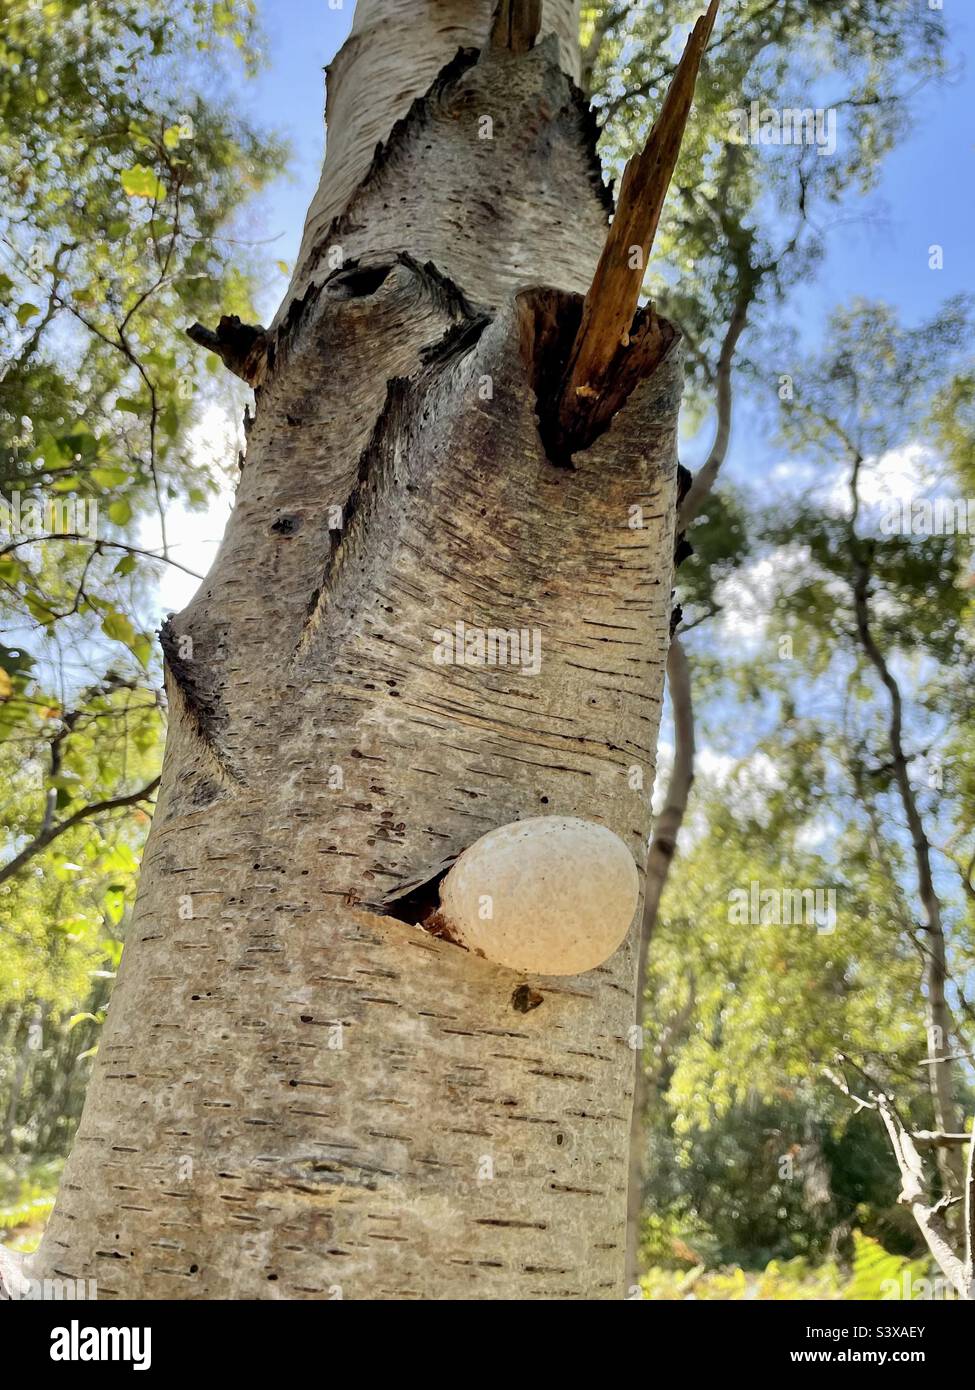 Las maravillas de la naturaleza. Este tronco de árbol se ve como una cara, con hongos que parece que el árbol está soplando chicle de su boca. Foto de stock